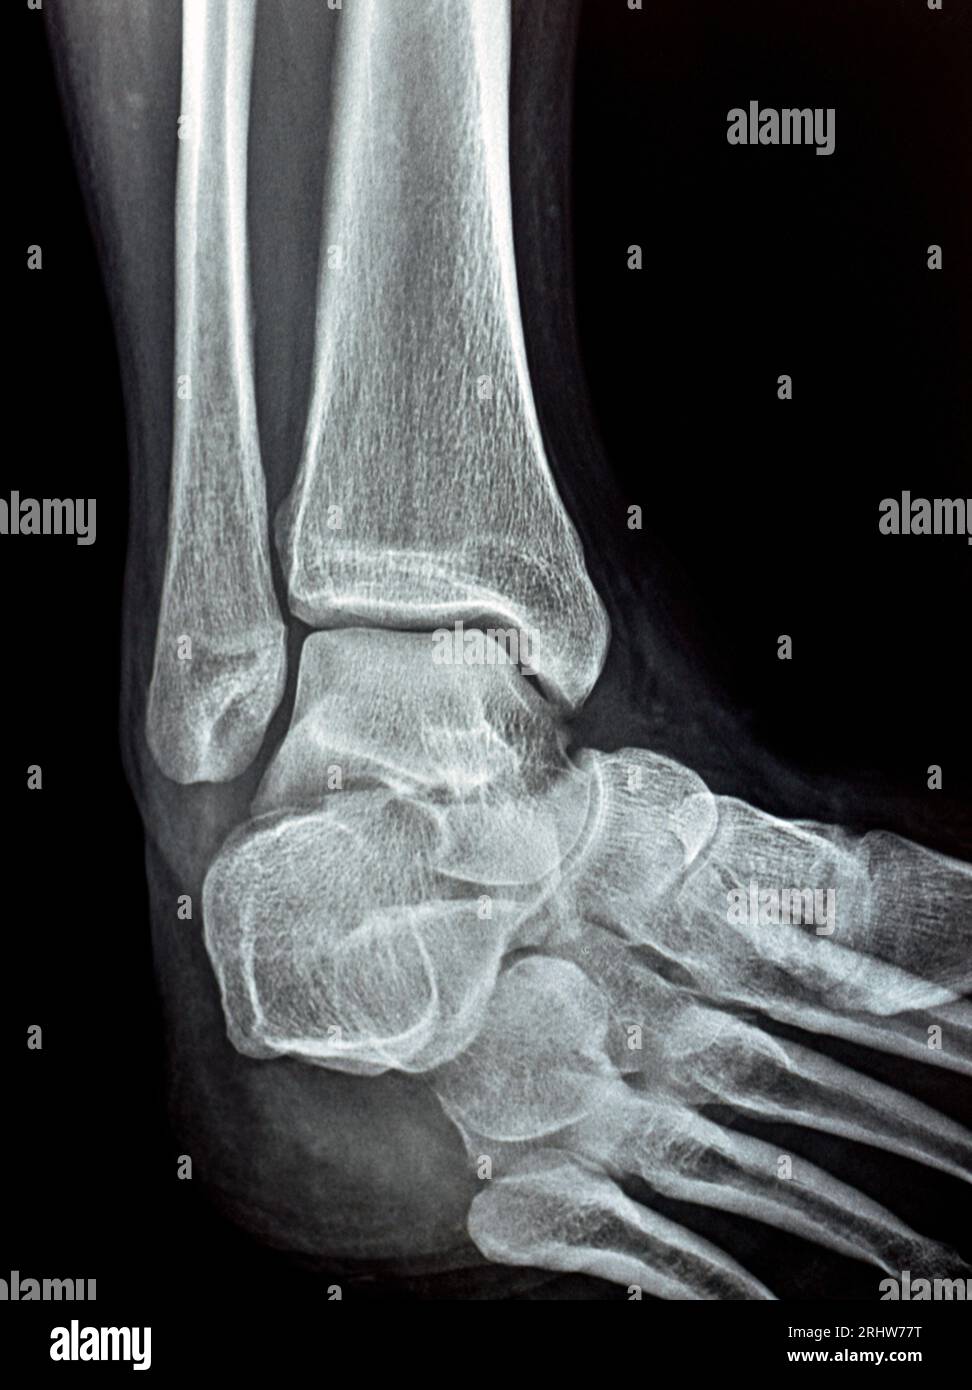 Einfache Röntgenaufnahme des rechten Sprunggelenks mit syndesmotischer Knöchelverstauchung, einer Verletzung eines oder mehrerer Bänder, die das distale Tibiofibulum umfassen Stockfoto